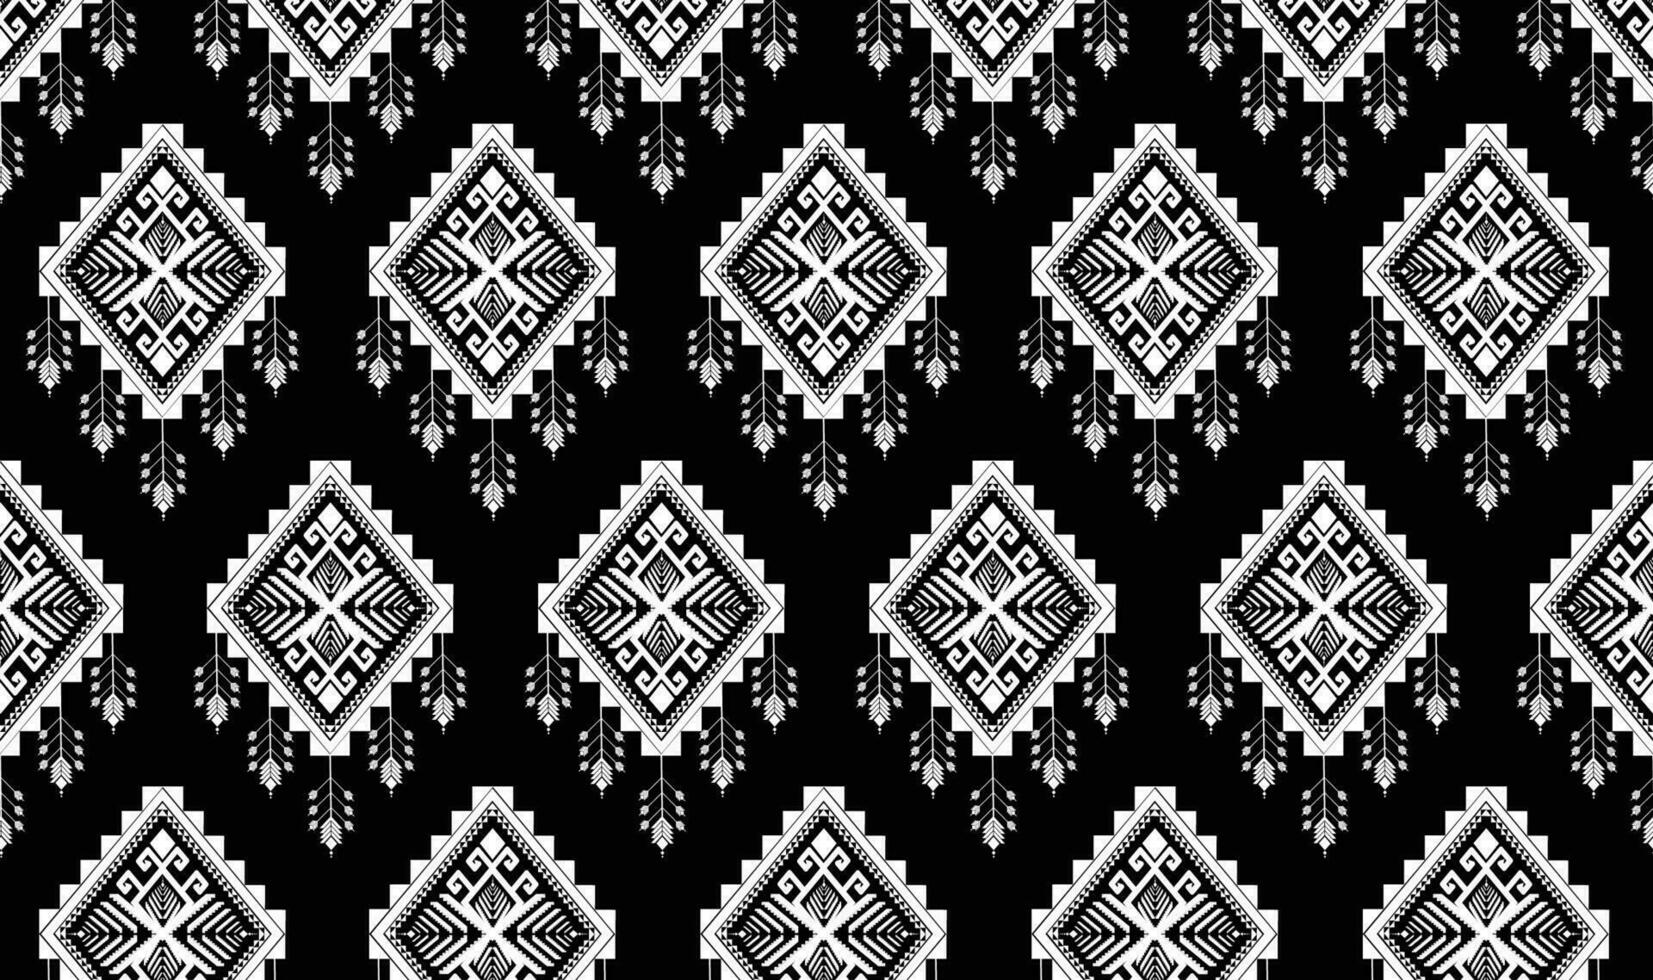 vector de patrón étnico geométrico. motivos africanos, americanos, mexicanos, aztecas occidentales a rayas y patrones bohemios. diseñado para fondo, papel tapiz, impresión, alfombra, envoltura, azulejo, ilustración batik.vector.